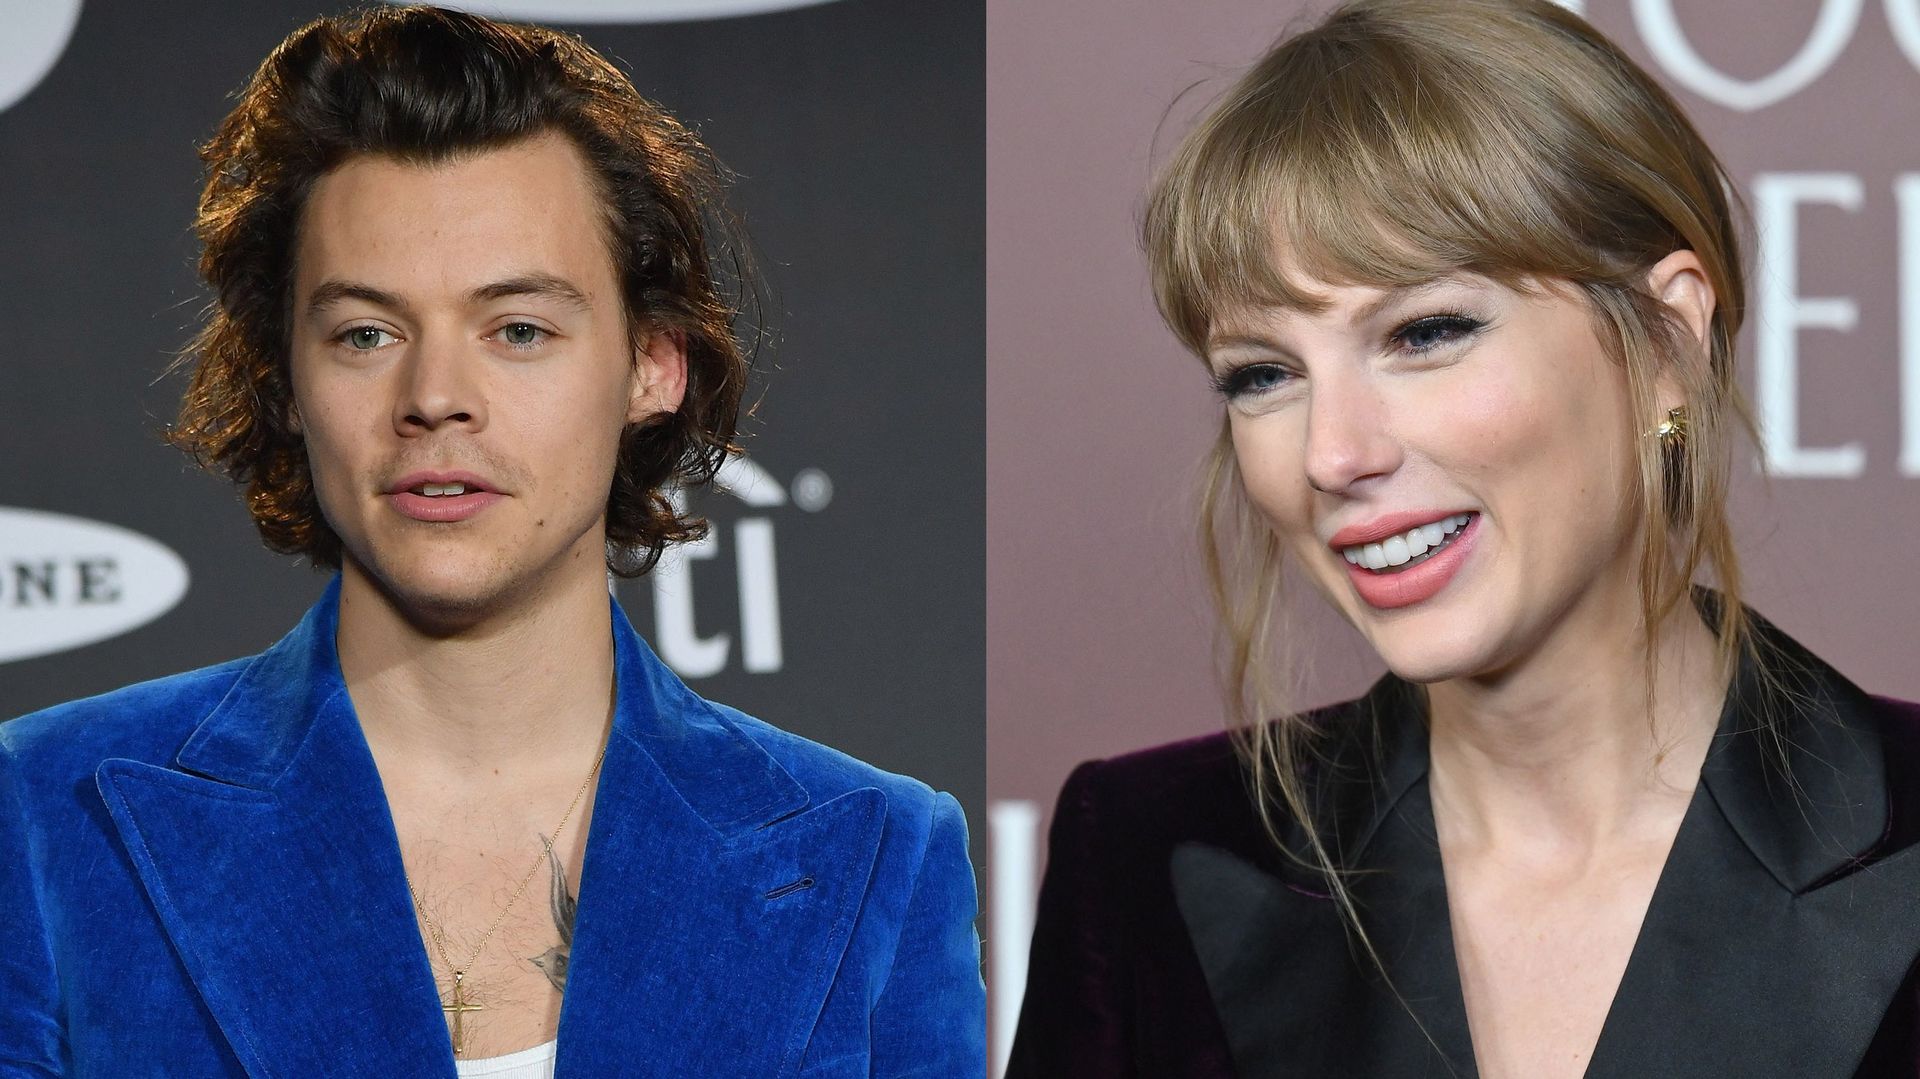 Les fans de musique peuvent désormais étudier Harry Styles et Taylor Swift sur les bancs de l’université.